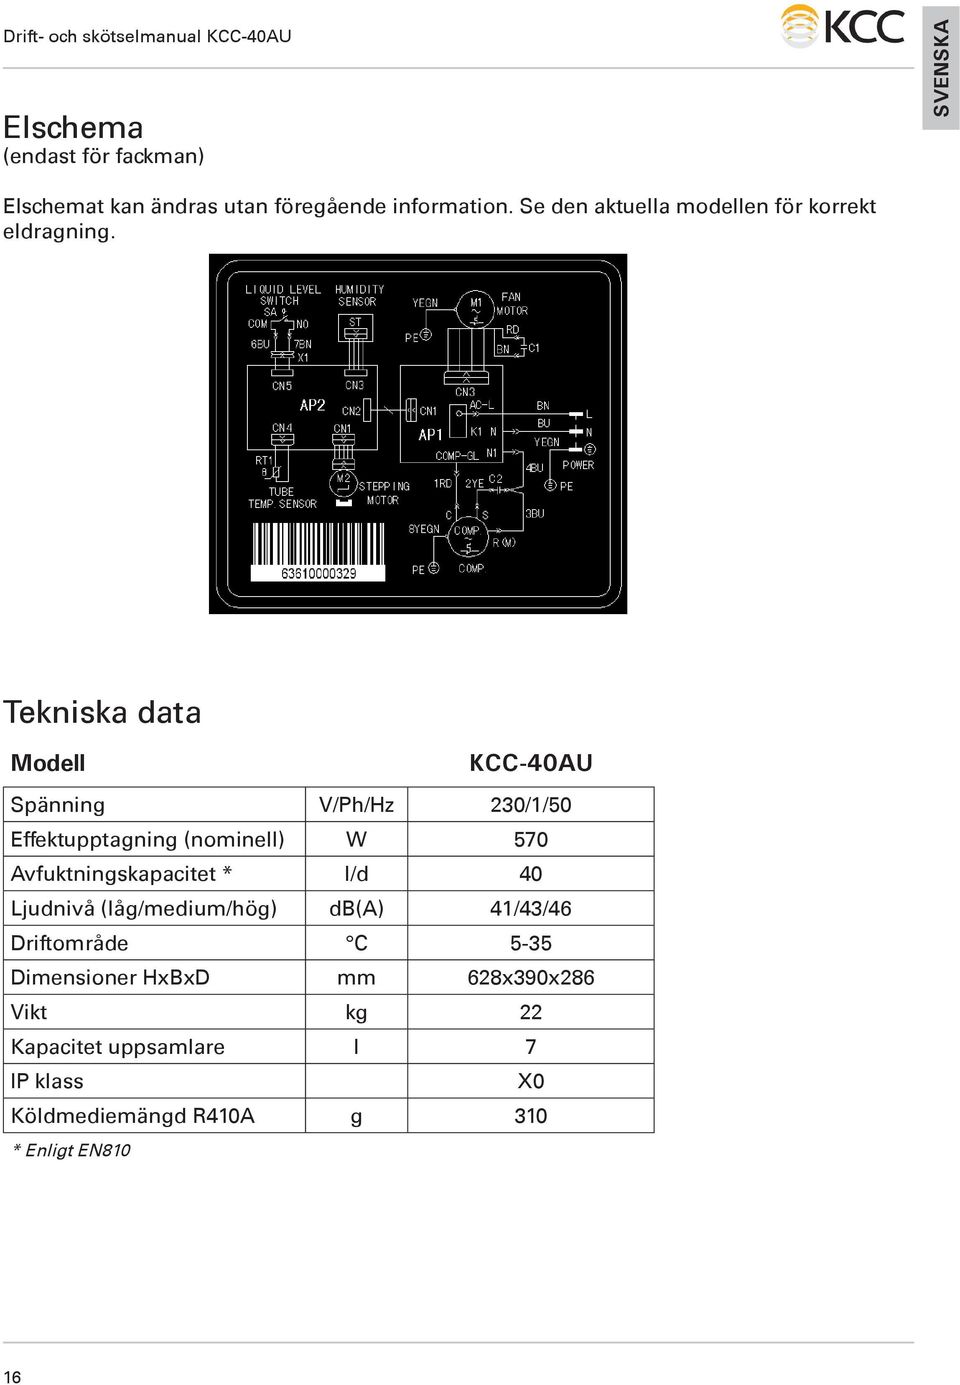 Tekniska data Modell KCC-40AU Spänning V/Ph/Hz 230/1/50 Effektupptagning (nominell) W 570